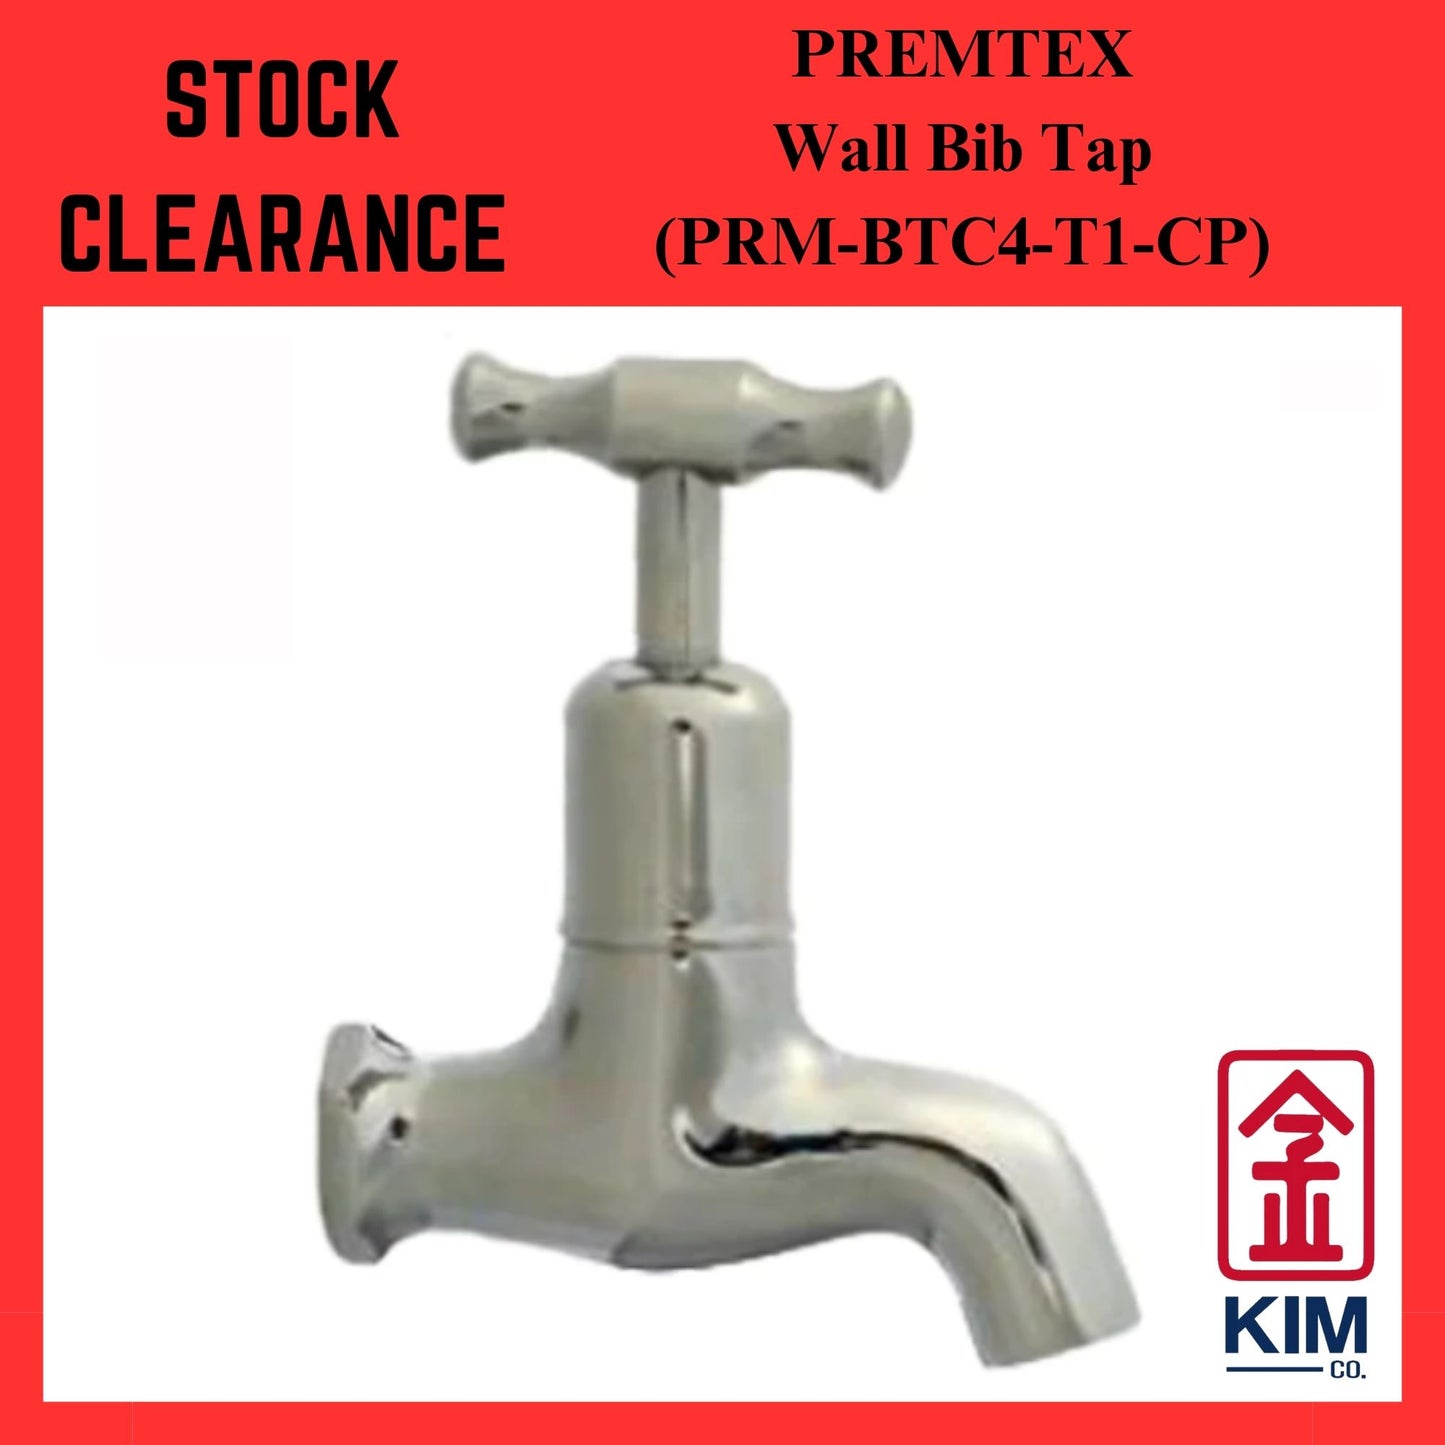 ( Stock Clearance ) Premtex Wall Bib Tap (PRM-BTC4-T1-CP)